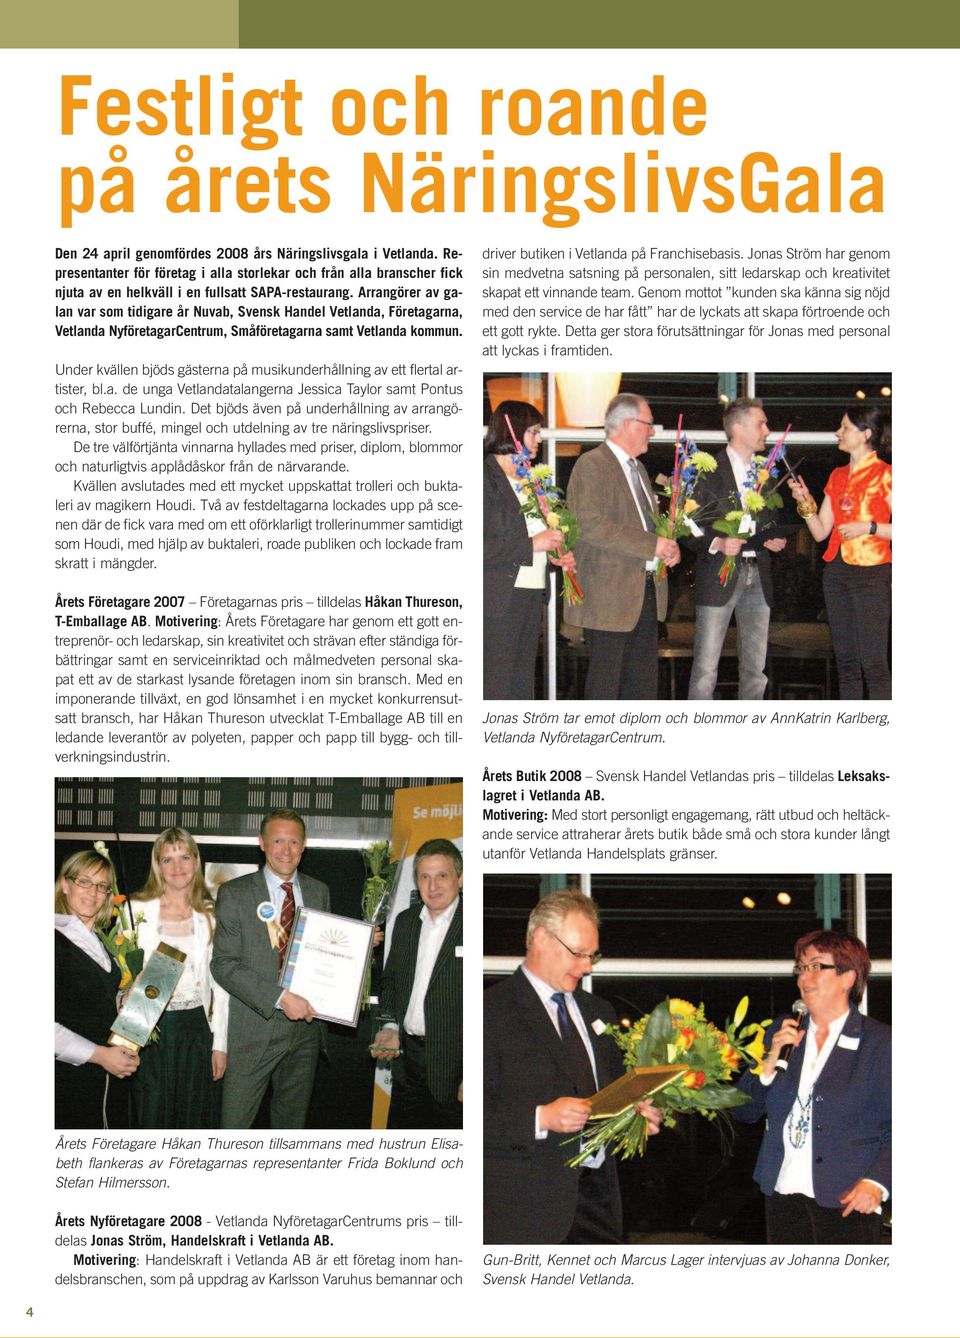 Arrangörer av galan var som tidigare år Nuvab, Svensk Handel Vetlanda, Företagarna, Vetlanda NyföretagarCentrum, Småföretagarna samt Vetlanda kommun.